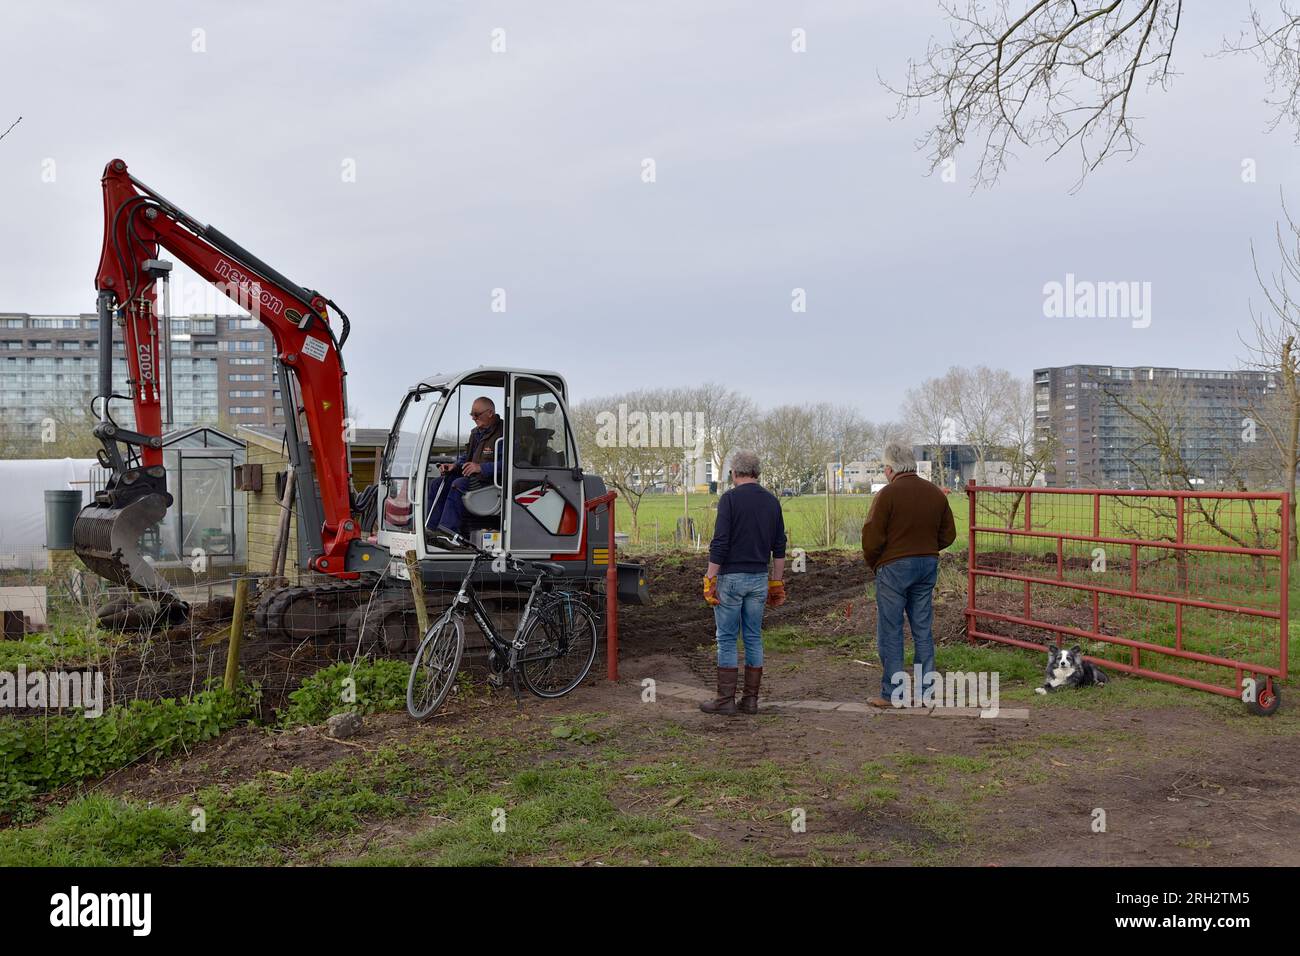 Eine kleine Grabmaschine bringt den Boden eines Kleingartens auf, zwei Männer und eine Hundeschule Stockfoto